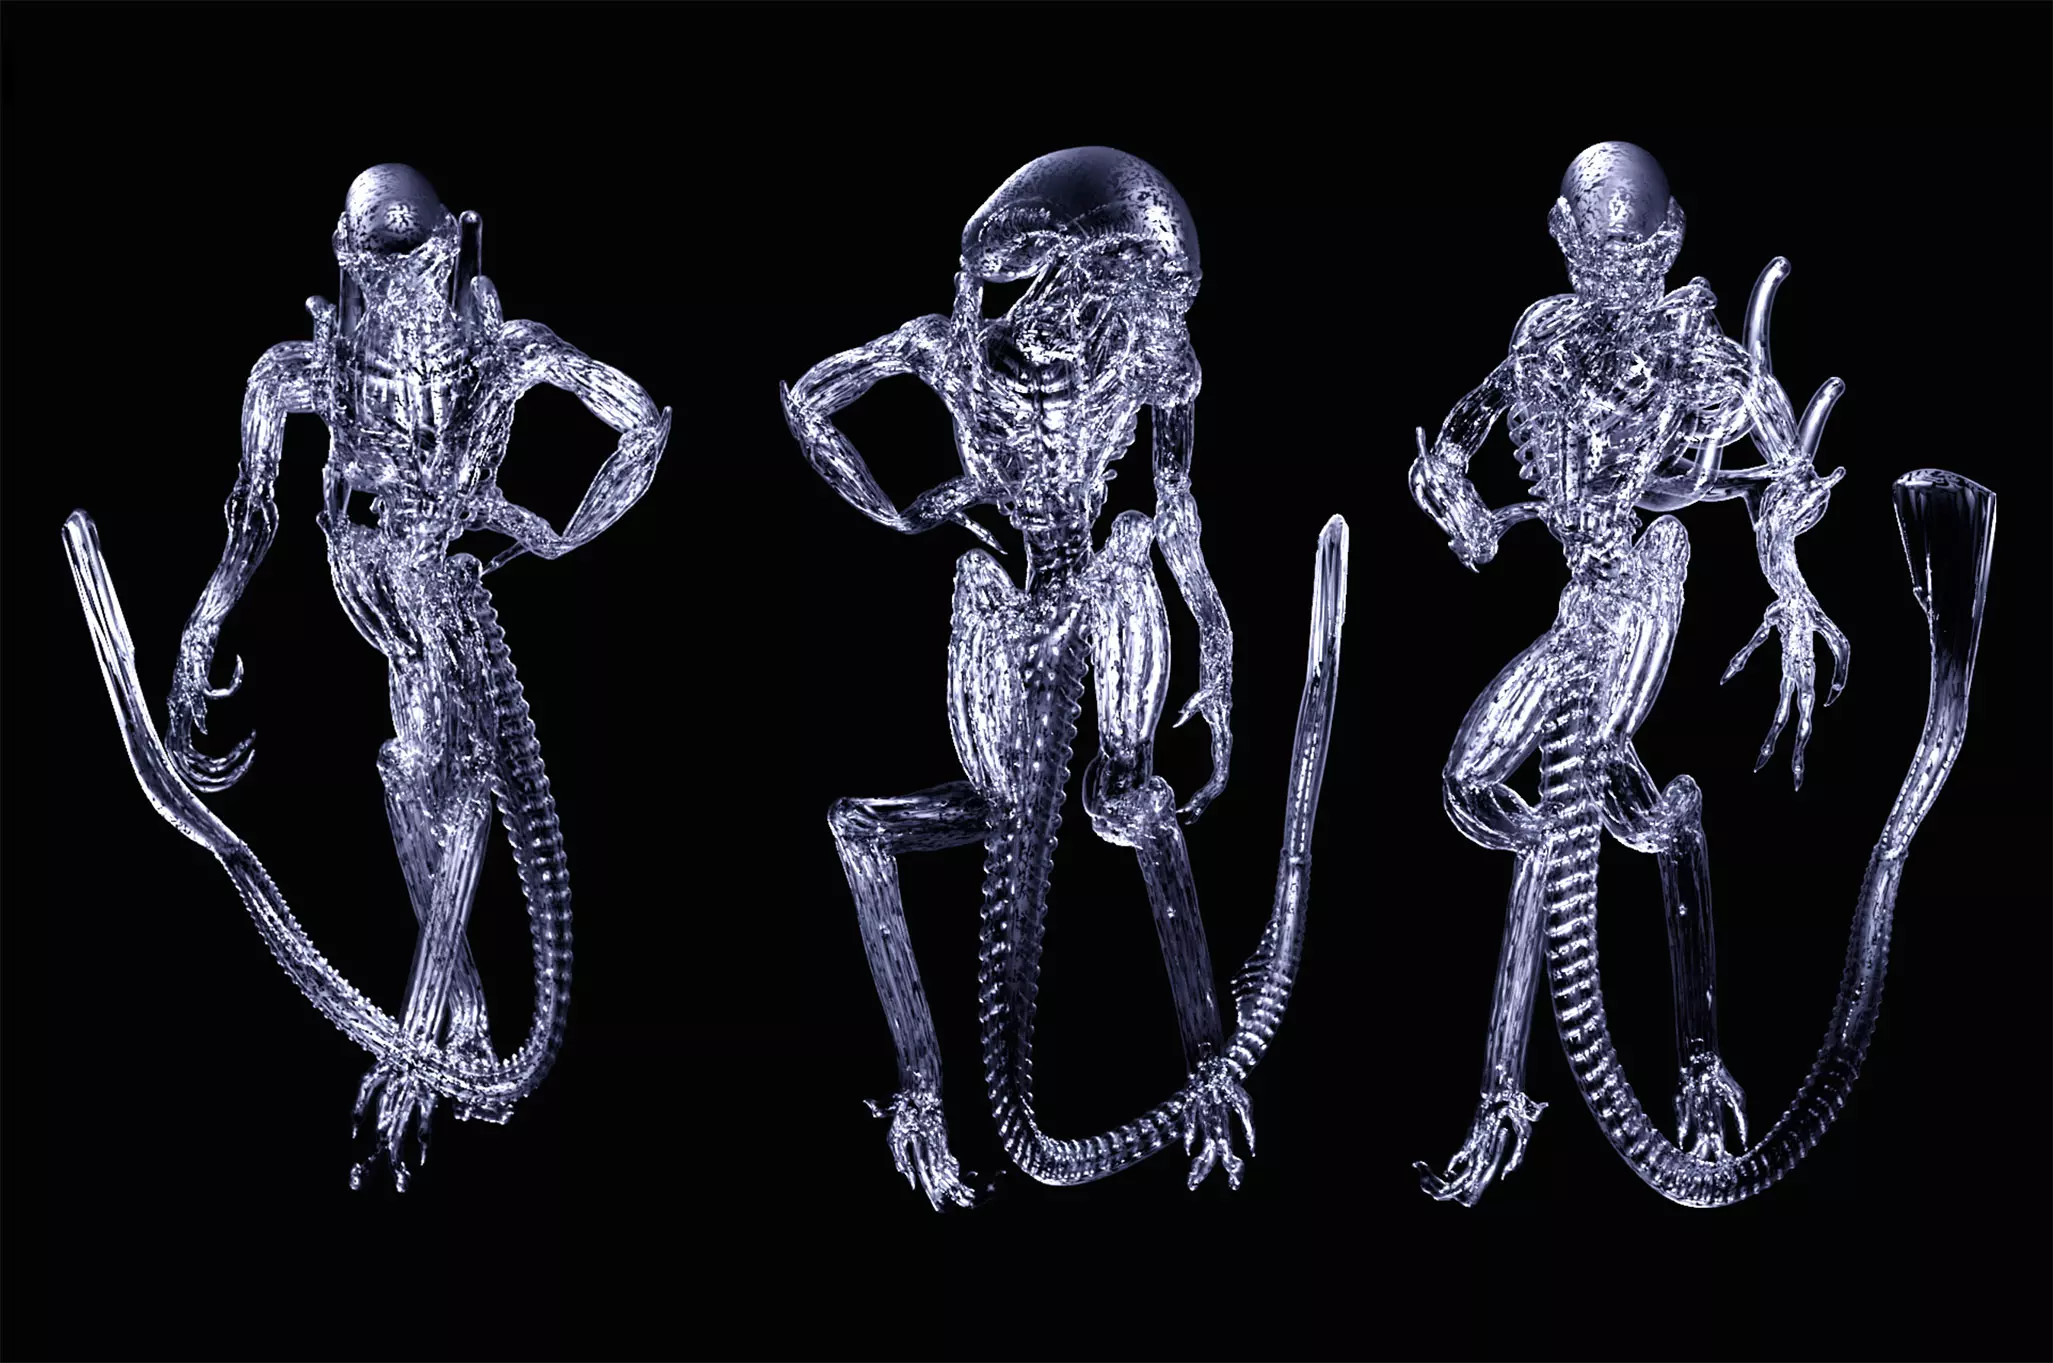 Aliens 3D models, 2018